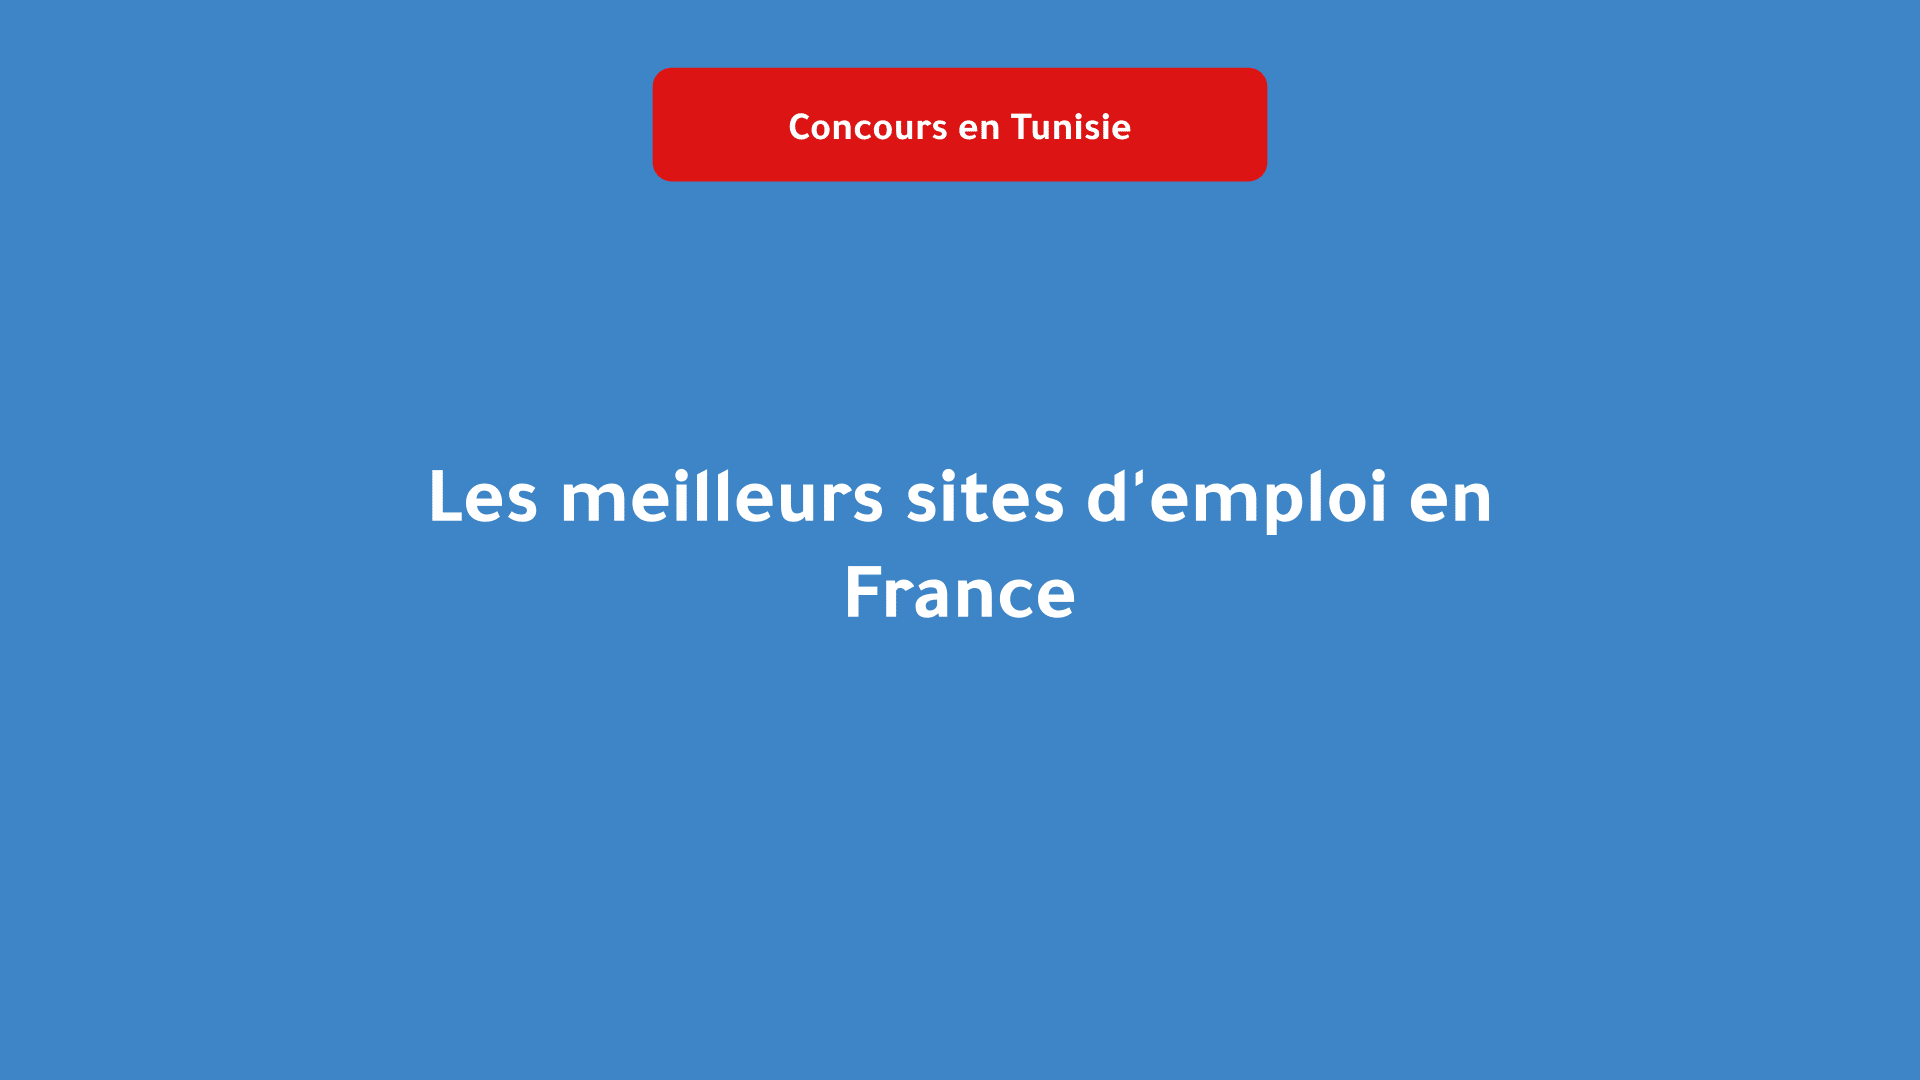 Les meilleurs sites d'emploi en France